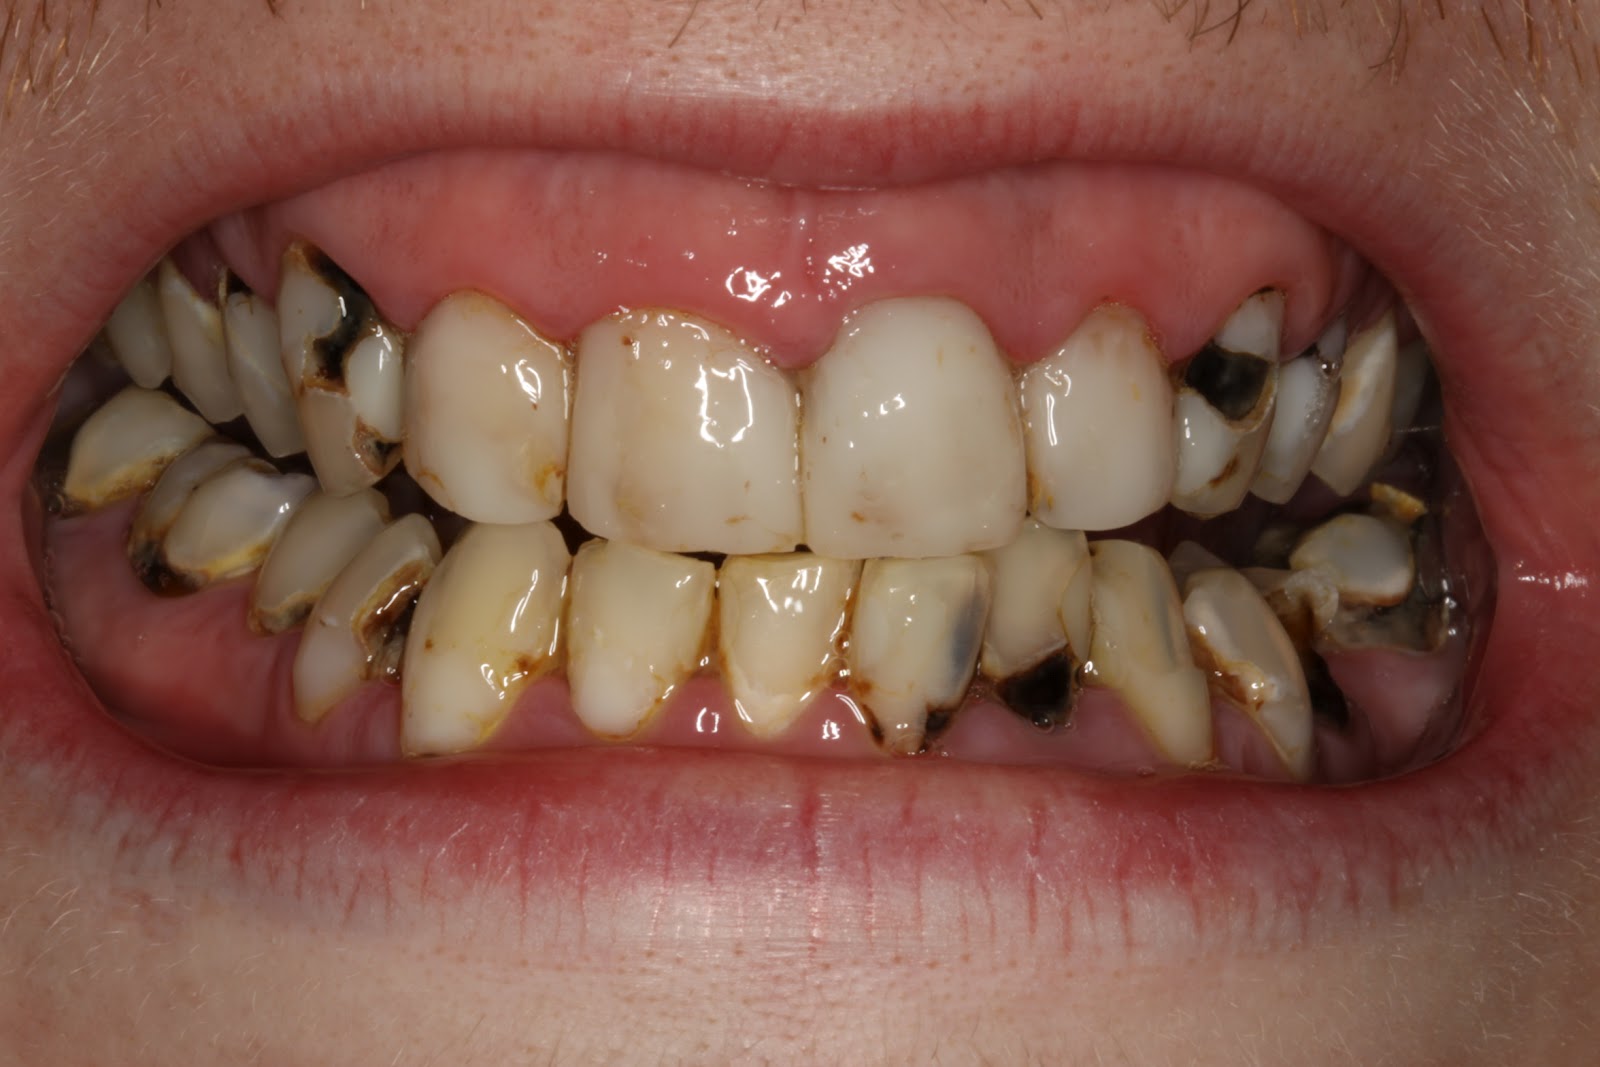 teeth-decay-jg1o9fpy.jpg